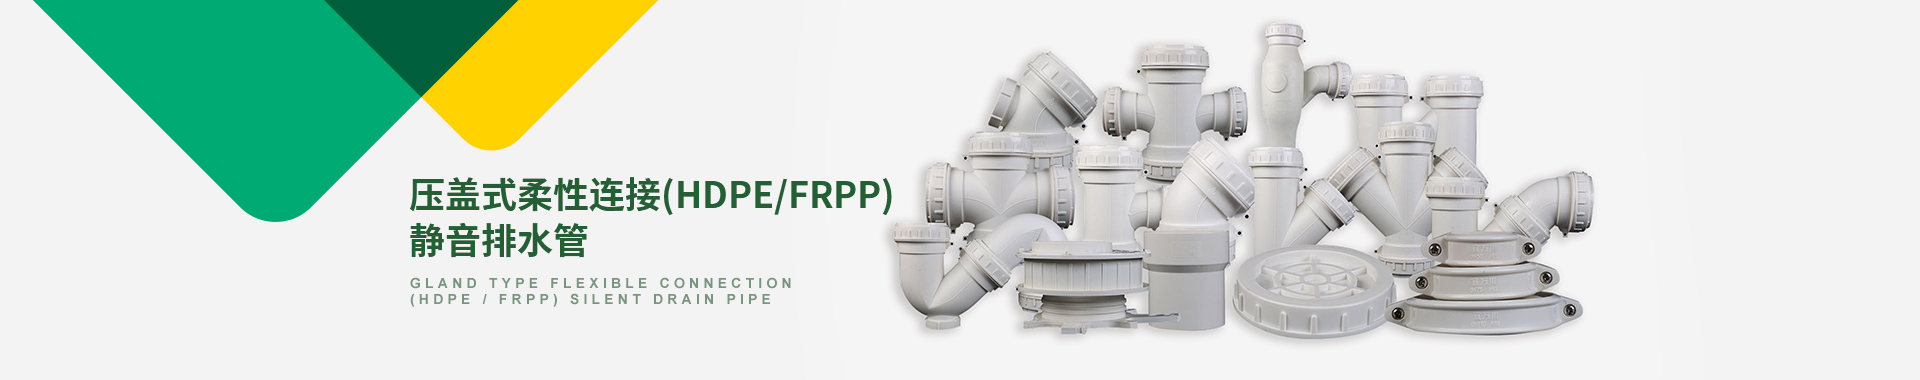 压盖式柔性连接(HDPE/FRPP)静音排水管